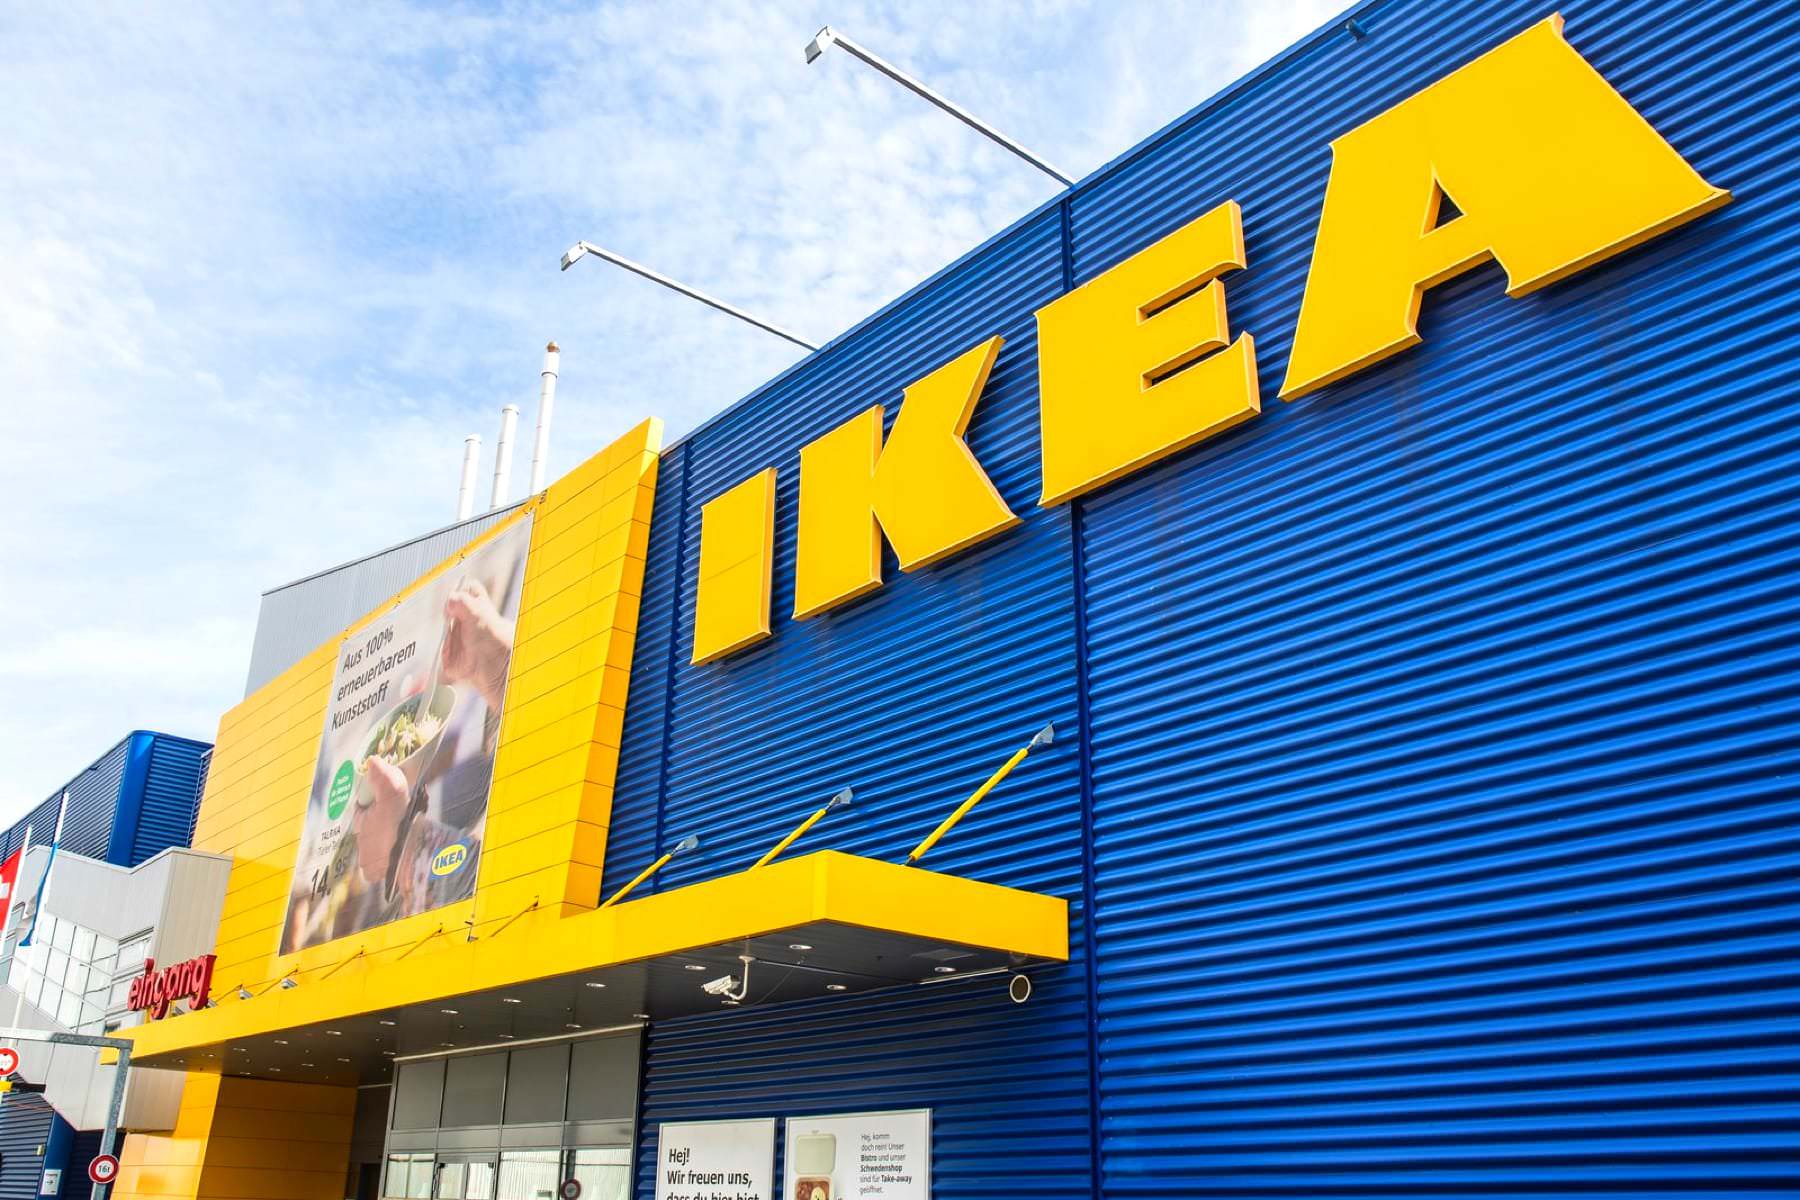 Купить товары IKEA вновь возможно, так как их начали производить в России